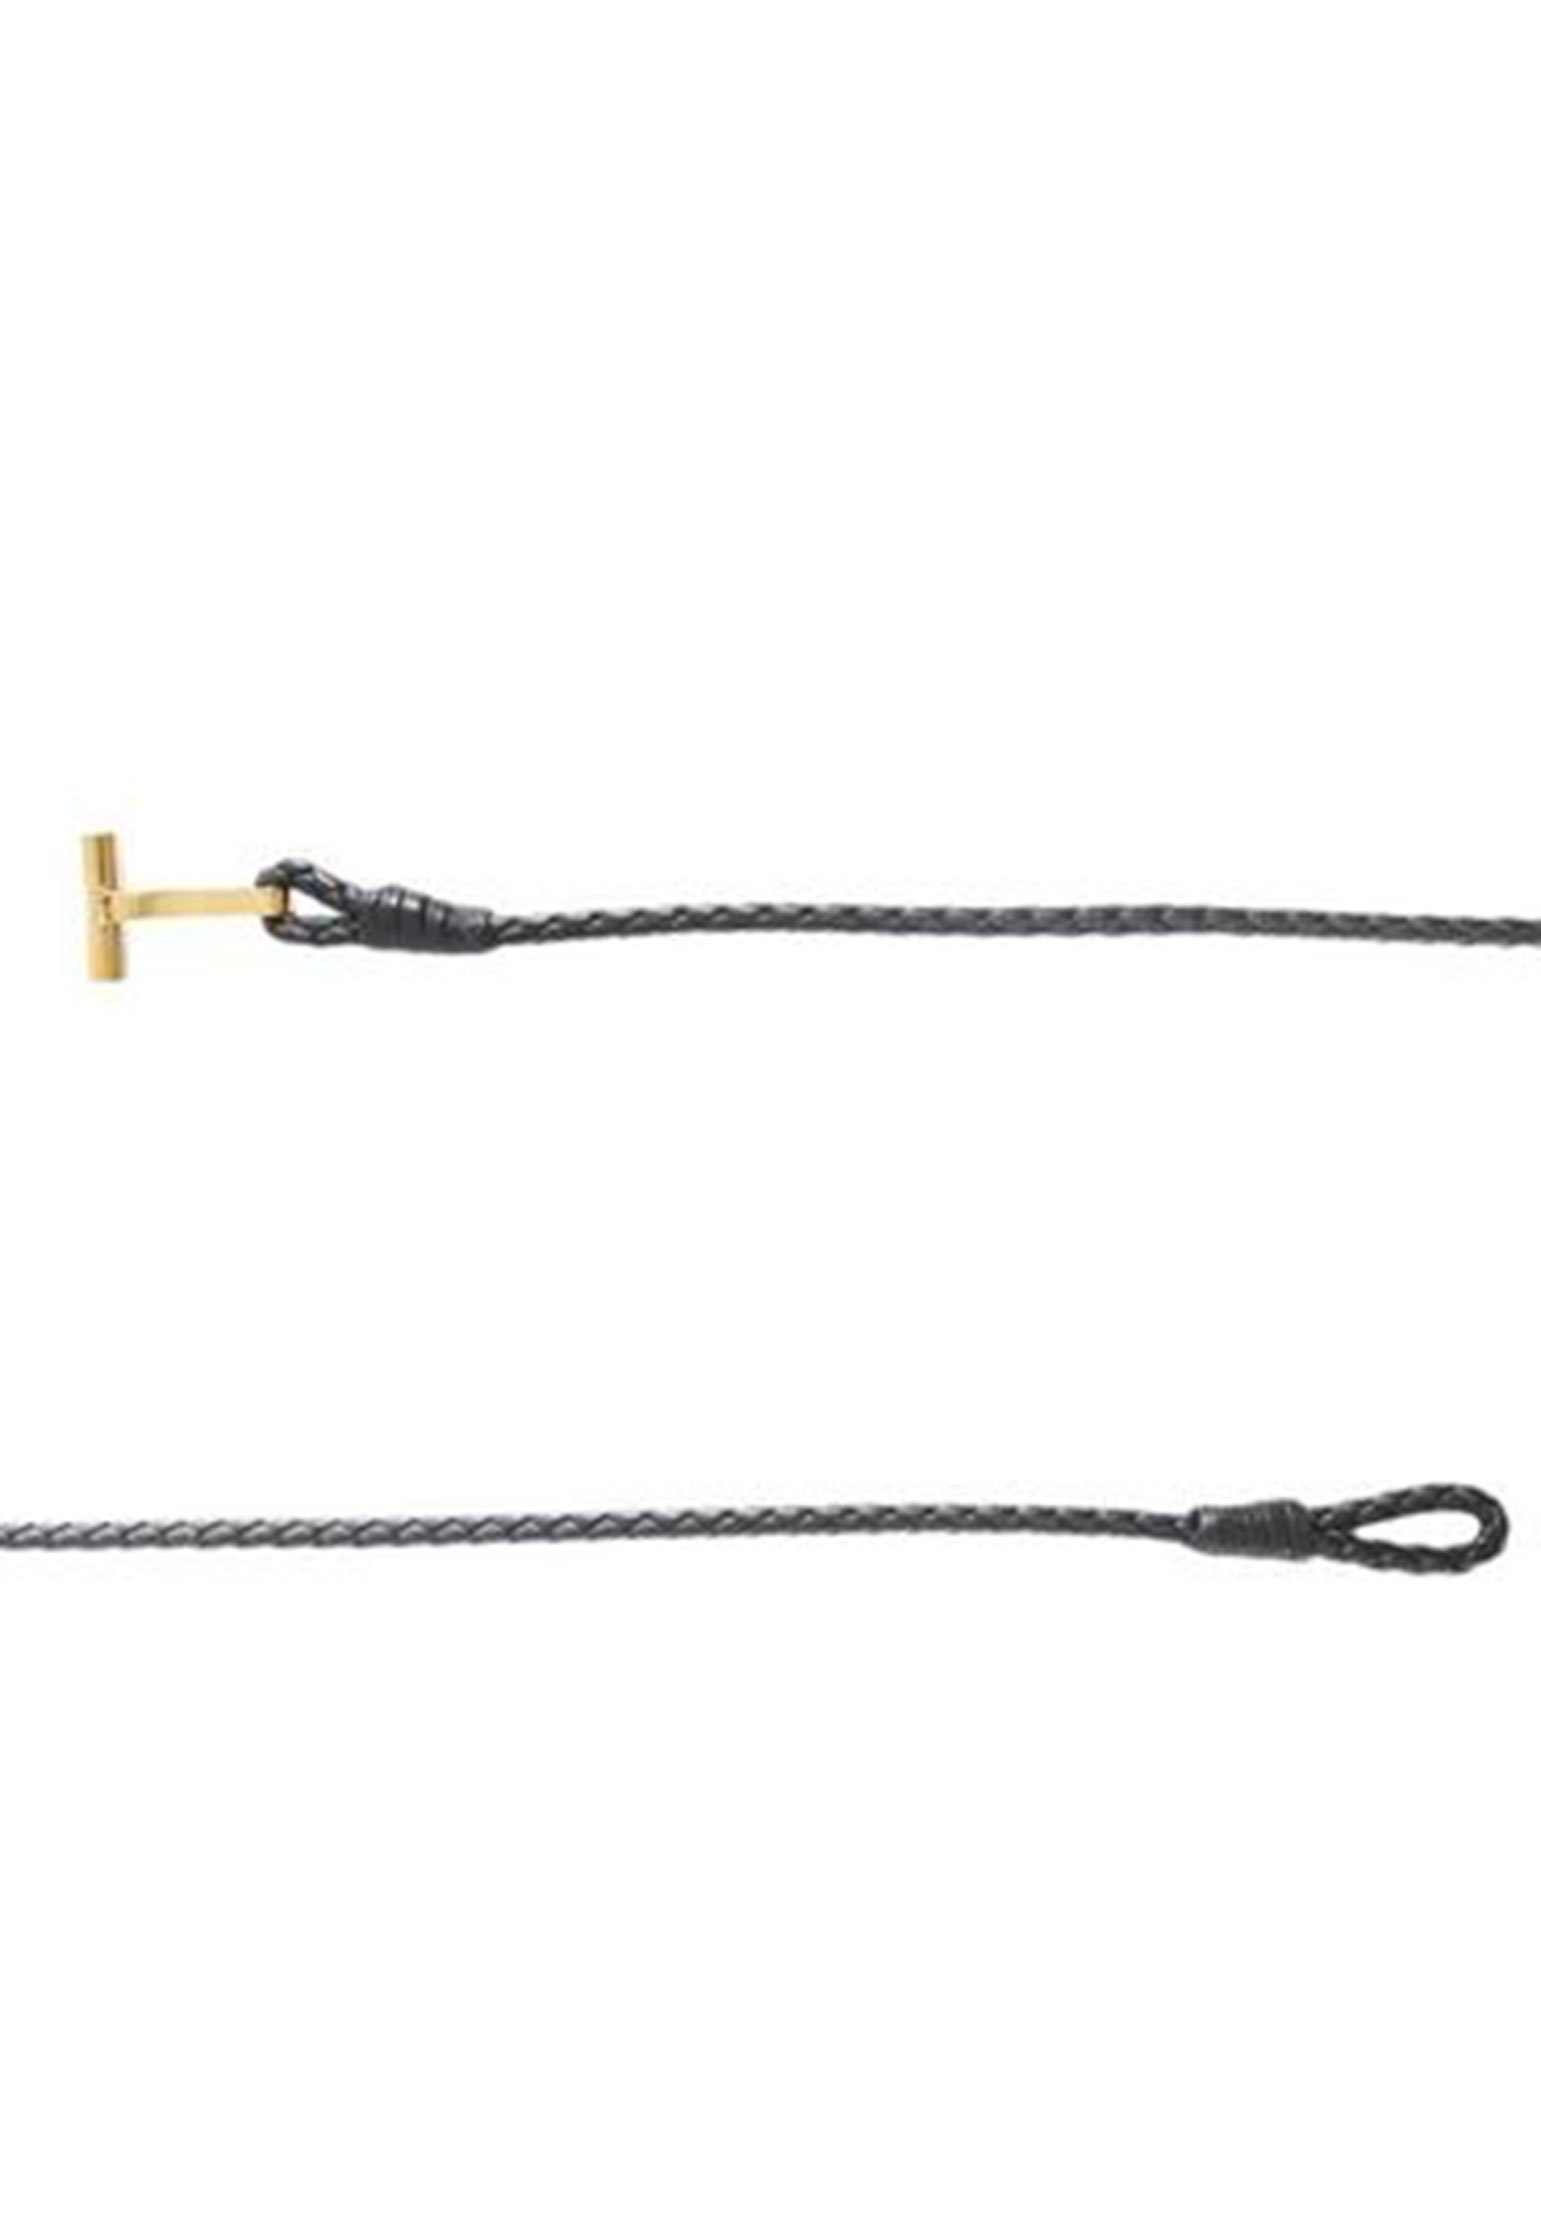 Bracelet TOM FORD Color: black (Code: 1059) in online store Allure